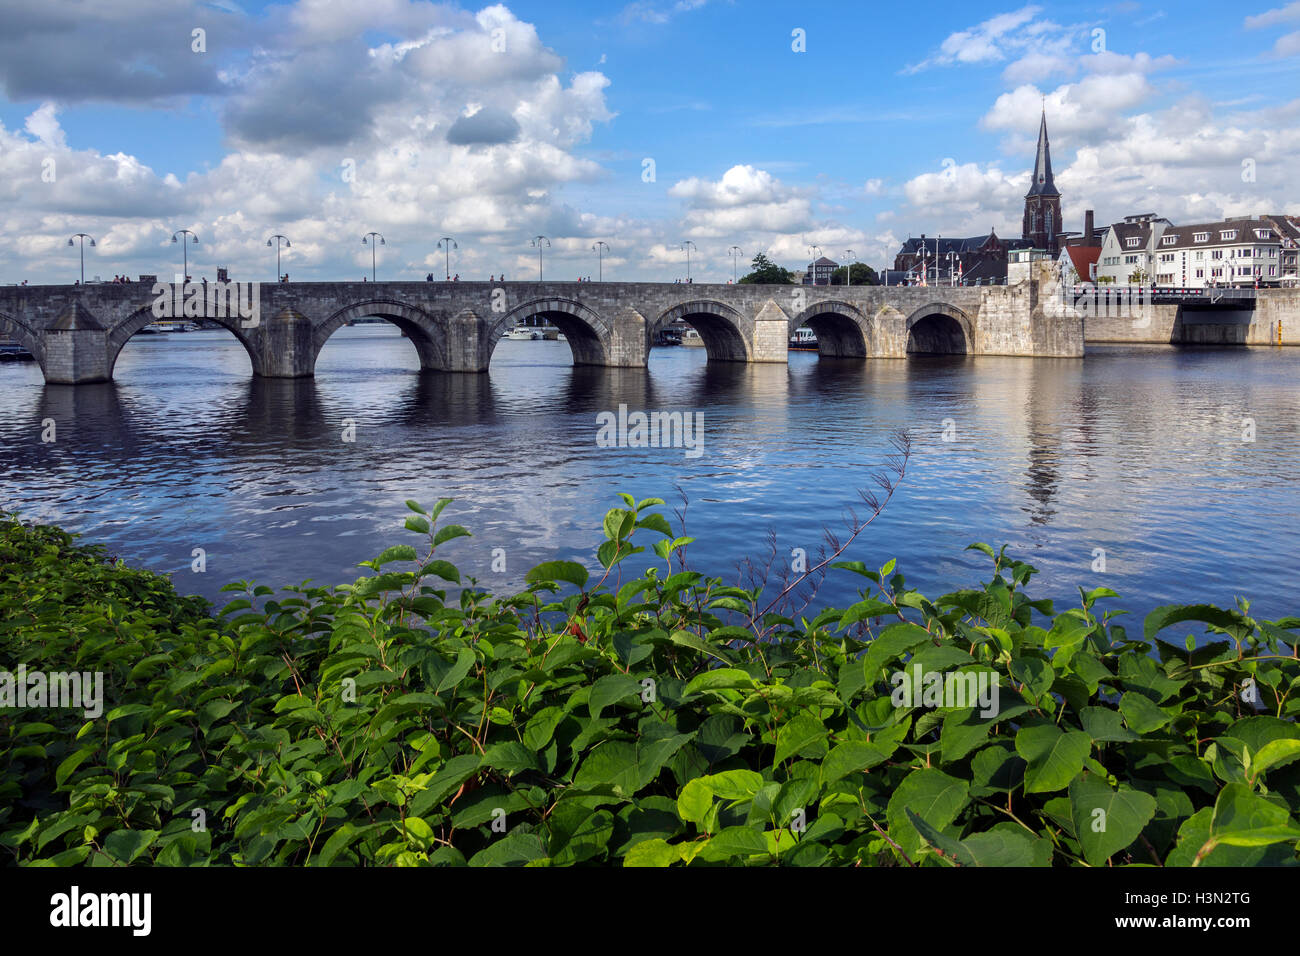 Vue sur le centre-ville de Maastricht avec son pont médiéval sur la Meuse.  Maastricht est une ville aux Pays-Bas Photo Stock - Alamy